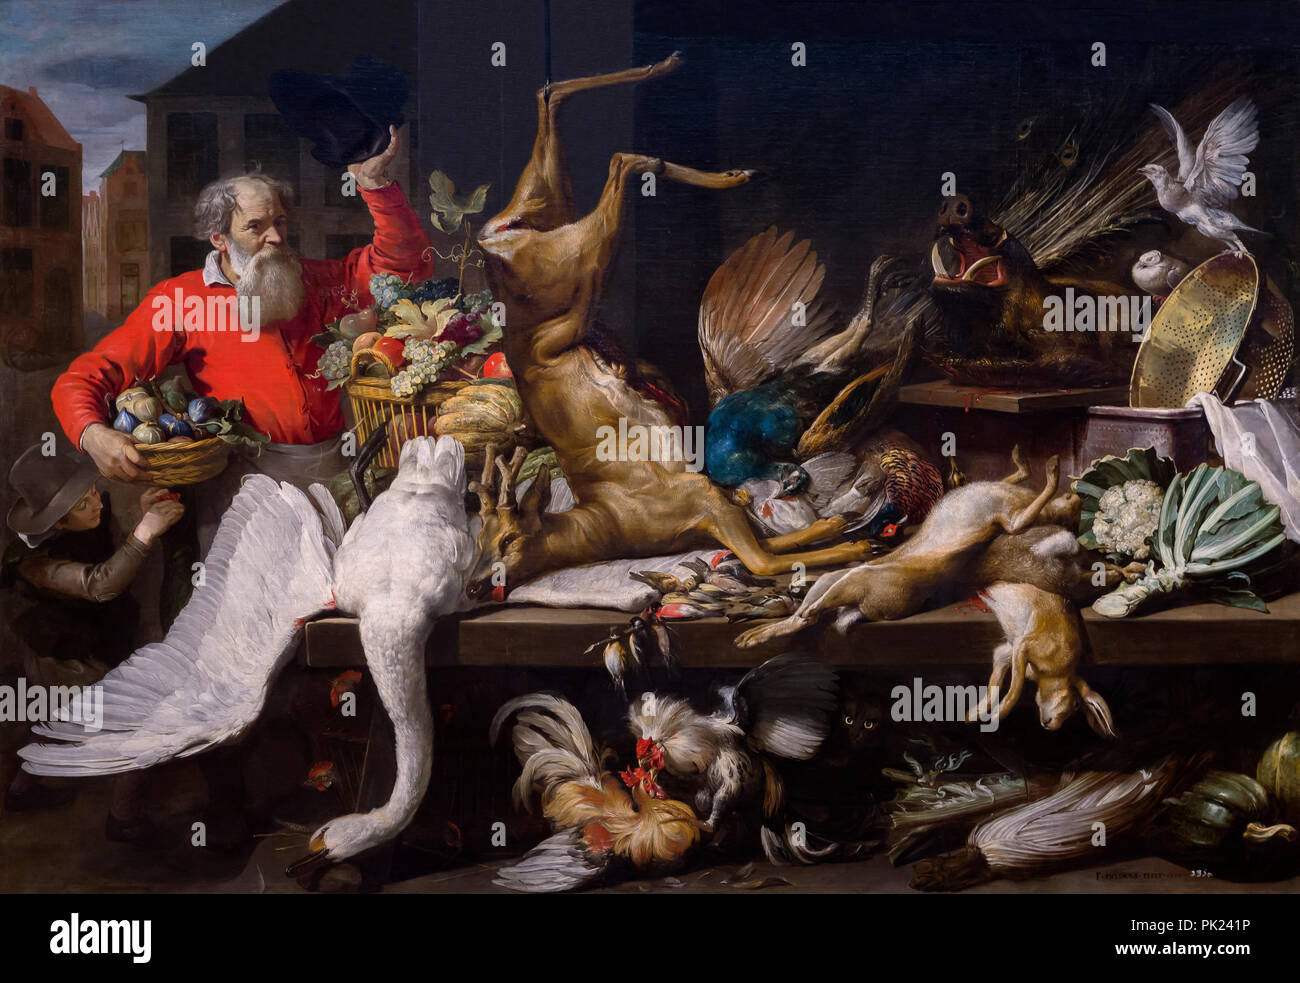 Stillleben mit Dead Game Obst und Gemüse auf einem Markt, Frans Snyders, 1614, Art Institute of Chicago, Chicago, Illinois, USA, Nordamerika, Stockfoto